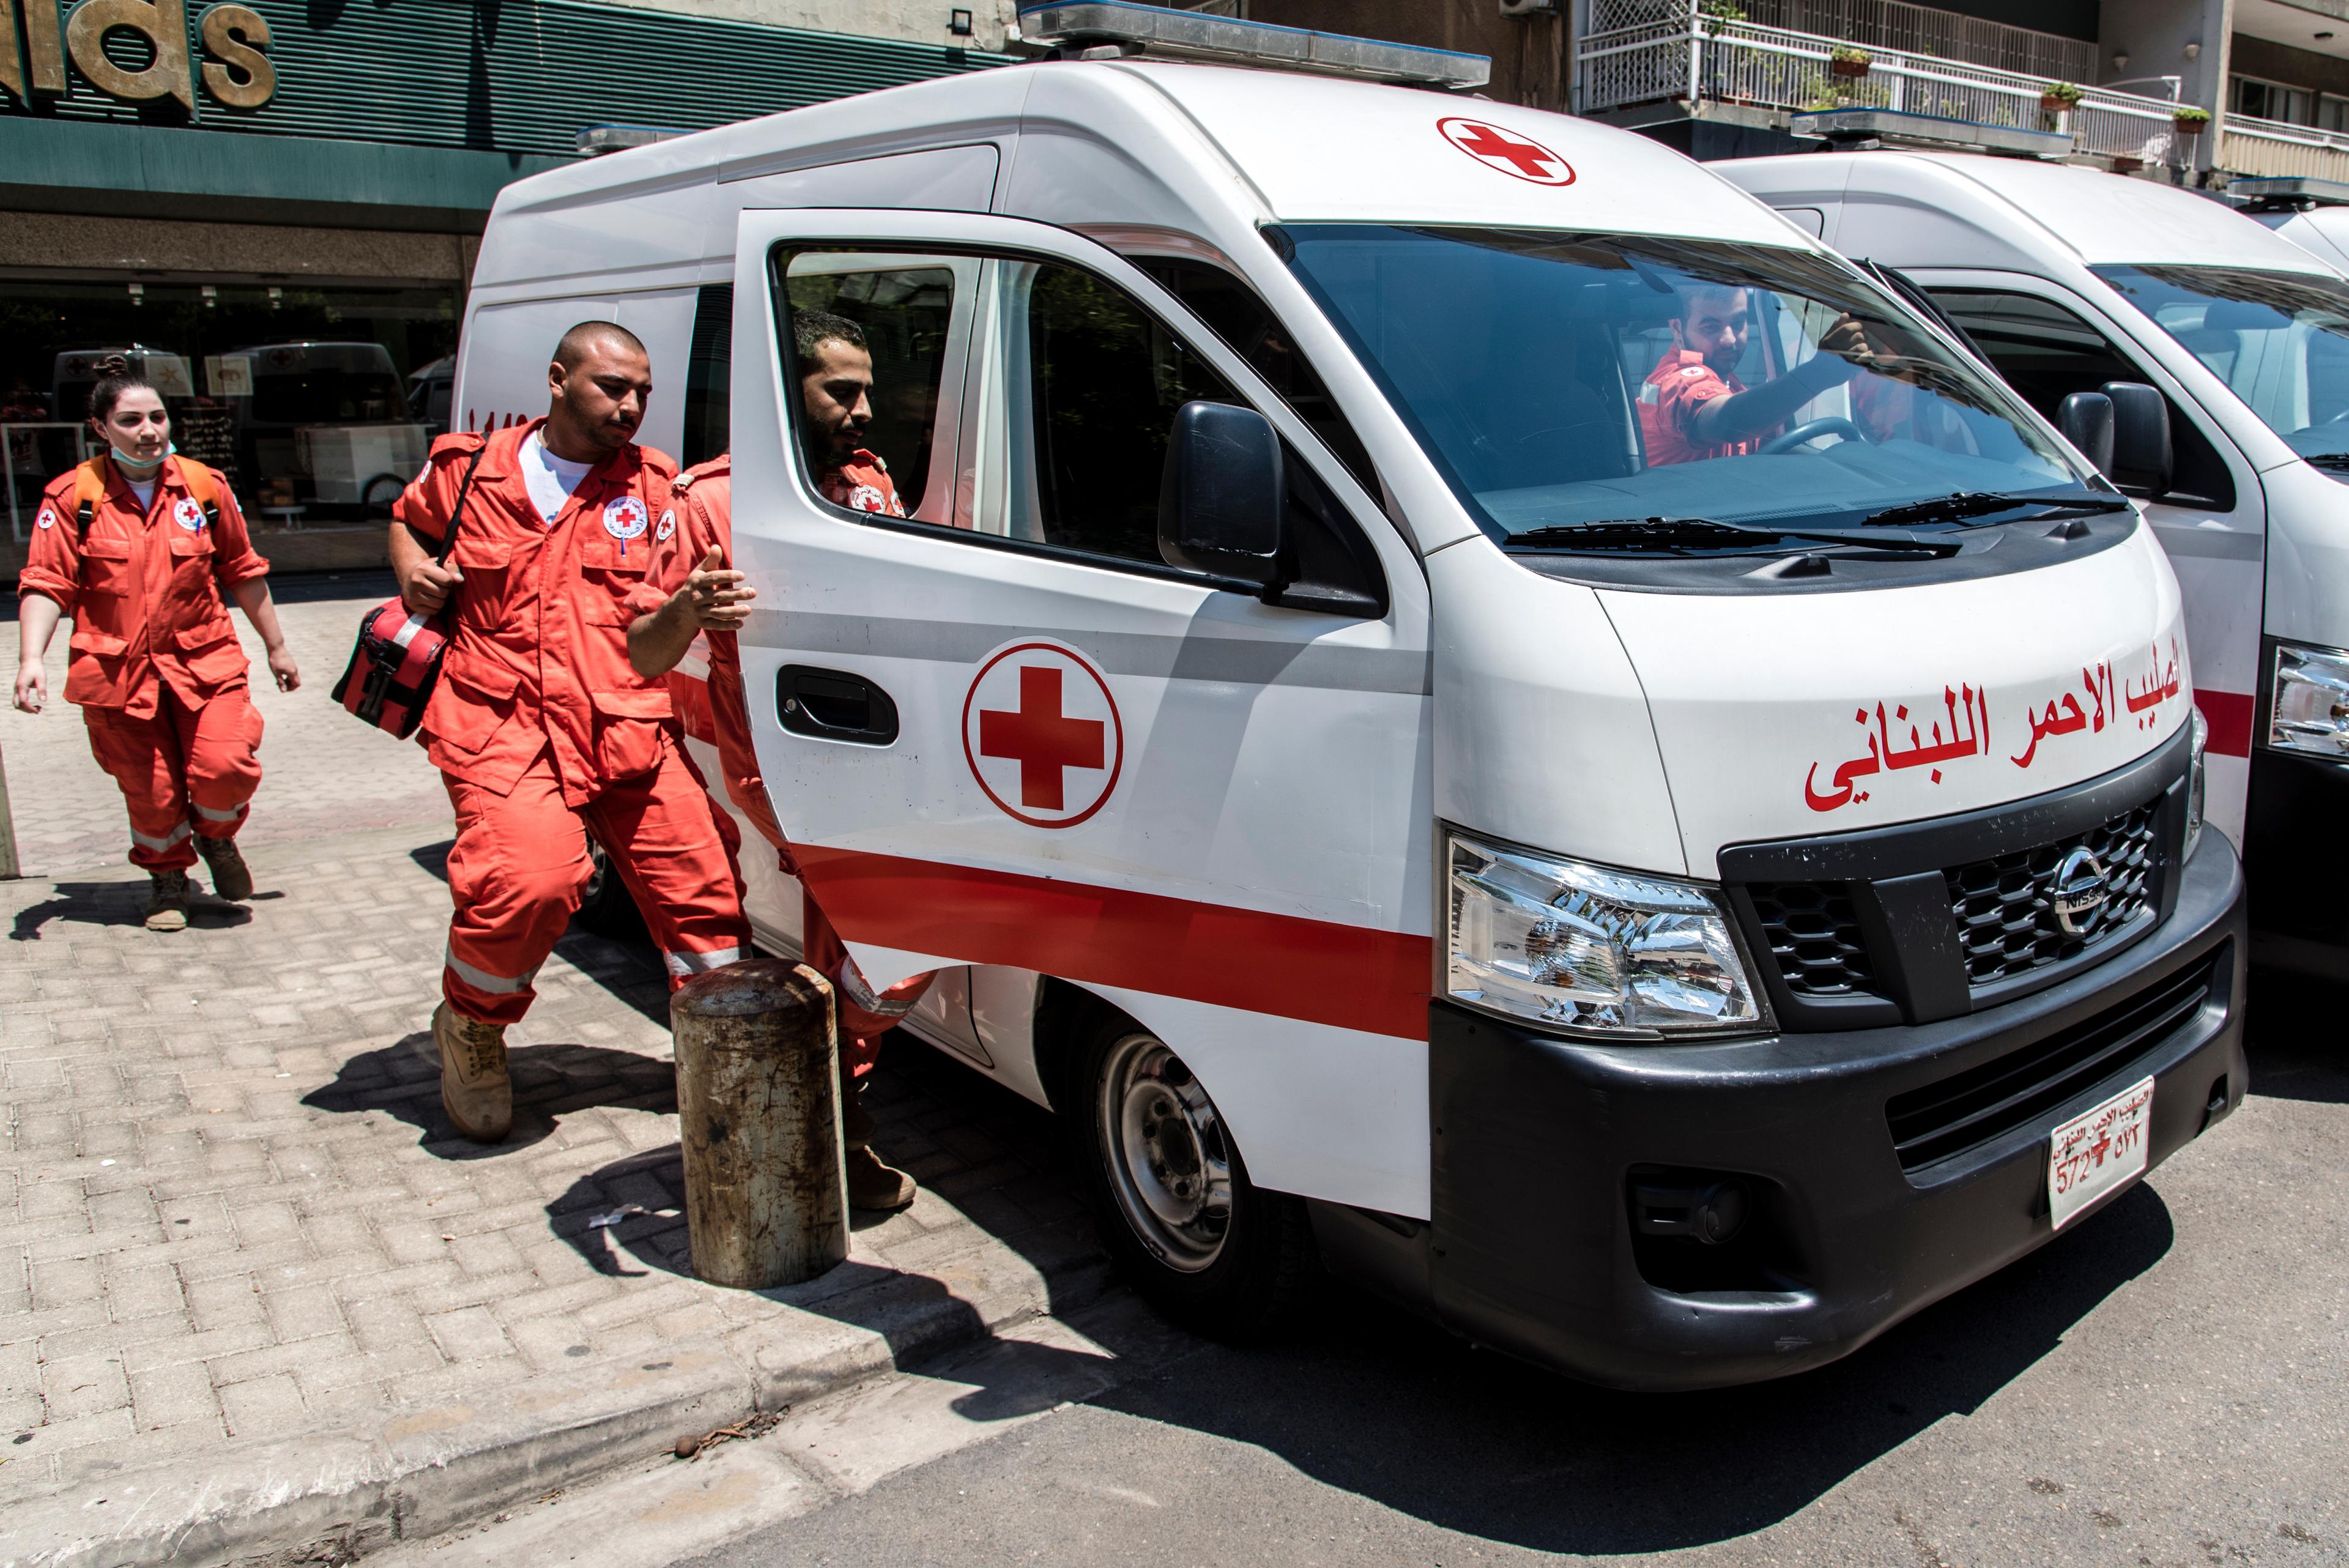 Rettungsdienst des Libanesischen Roten Kreuzes in Tripoli. Der landesweite Ambulanzdienst ist für die libanesische Bevölkerung und syrische Flüchtlinge gleichermassen kostenlos. 
Ein Rettungsteam des LRK im Einsatz auf dem Weg zu einem Unfallort in Tripoli. Jede Minute zählt.